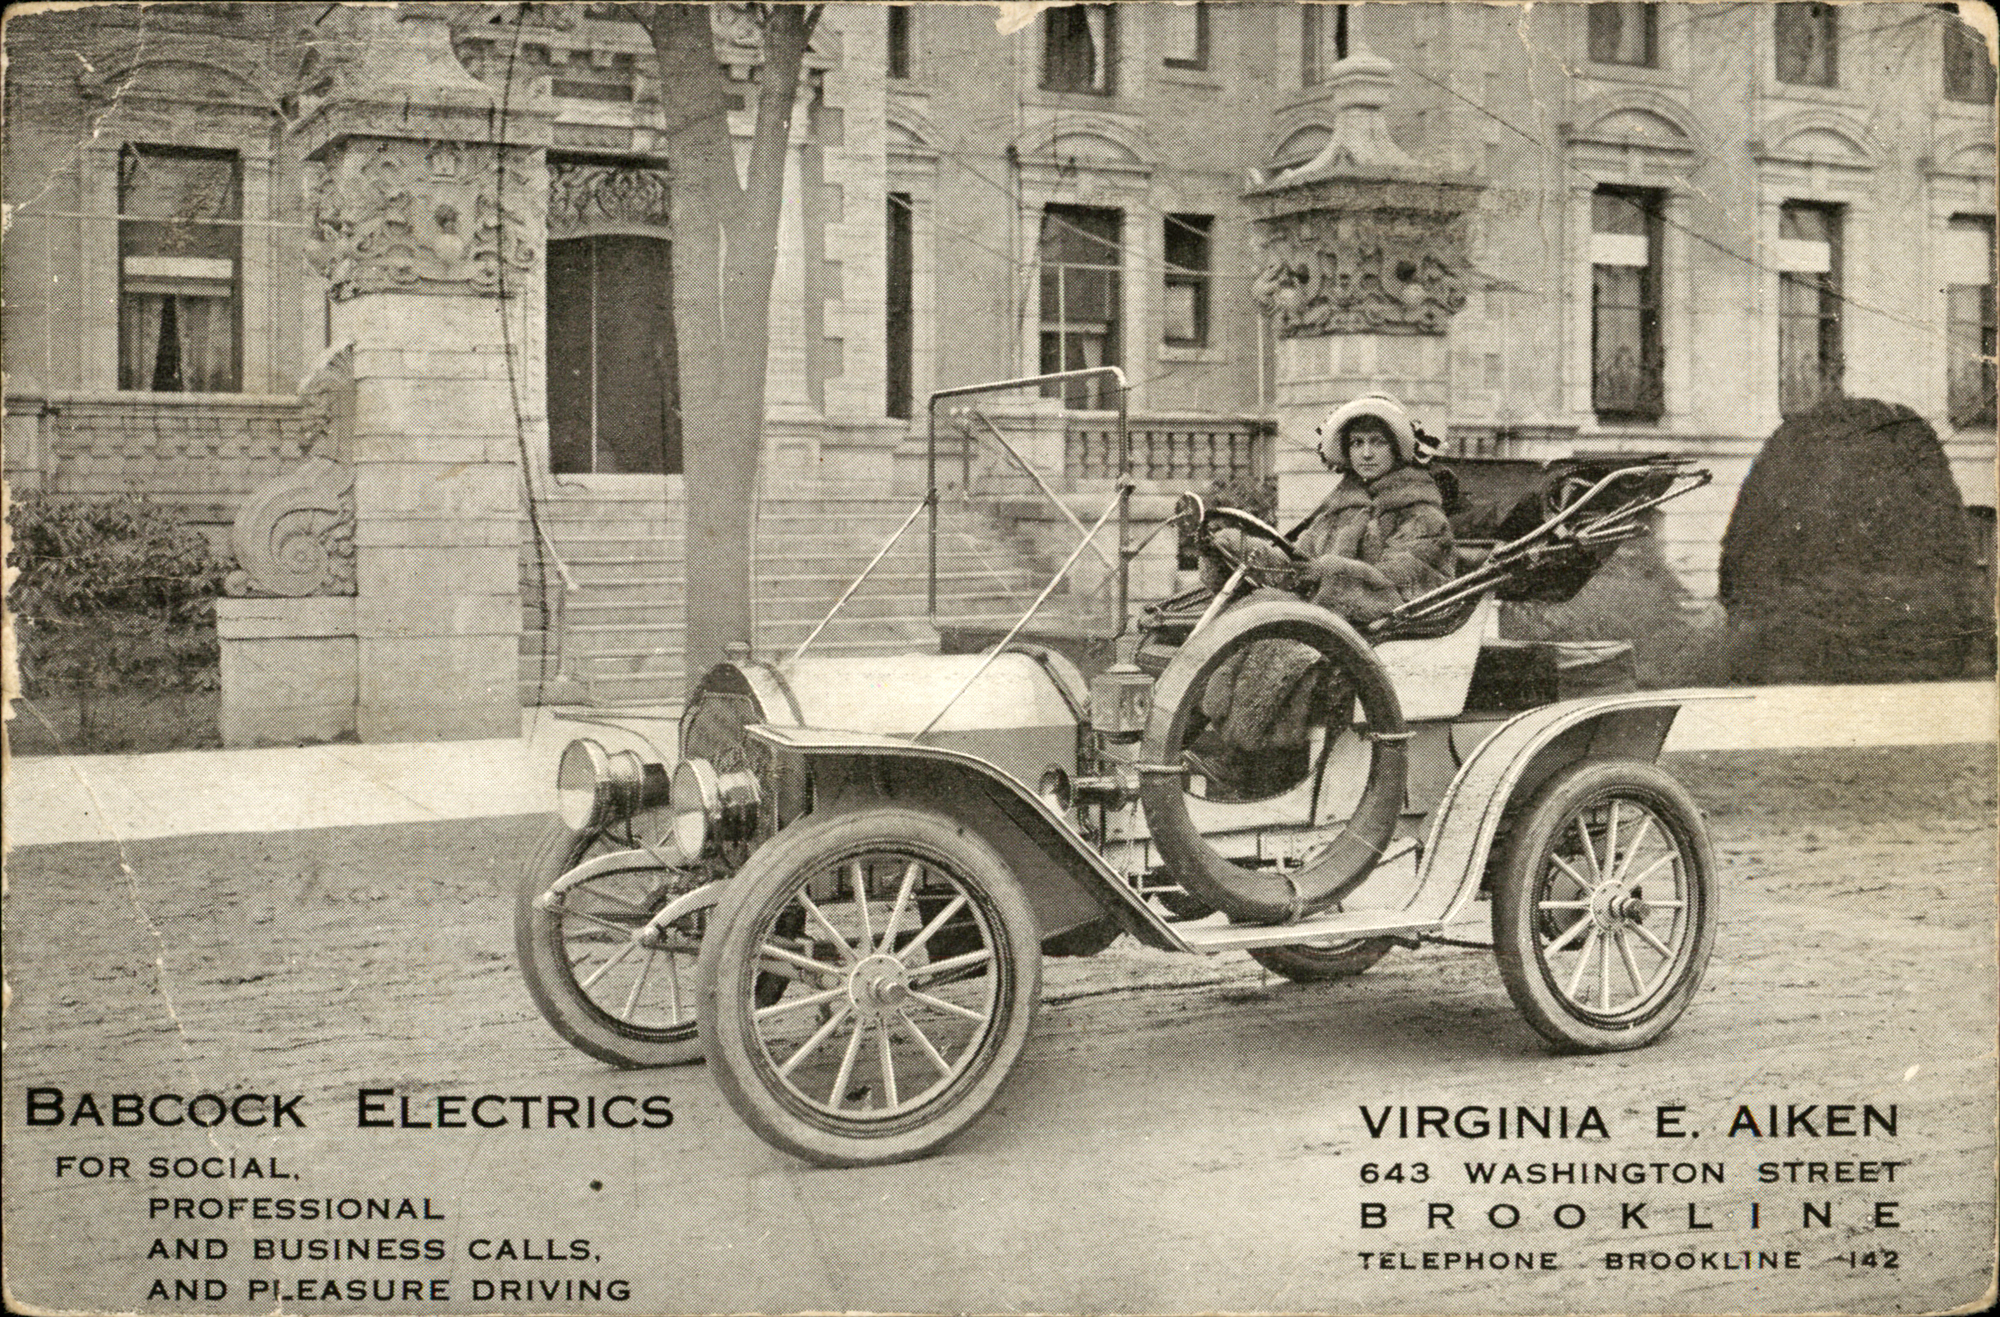 Virginia Aiken and Babcock Electrics, circa 1912